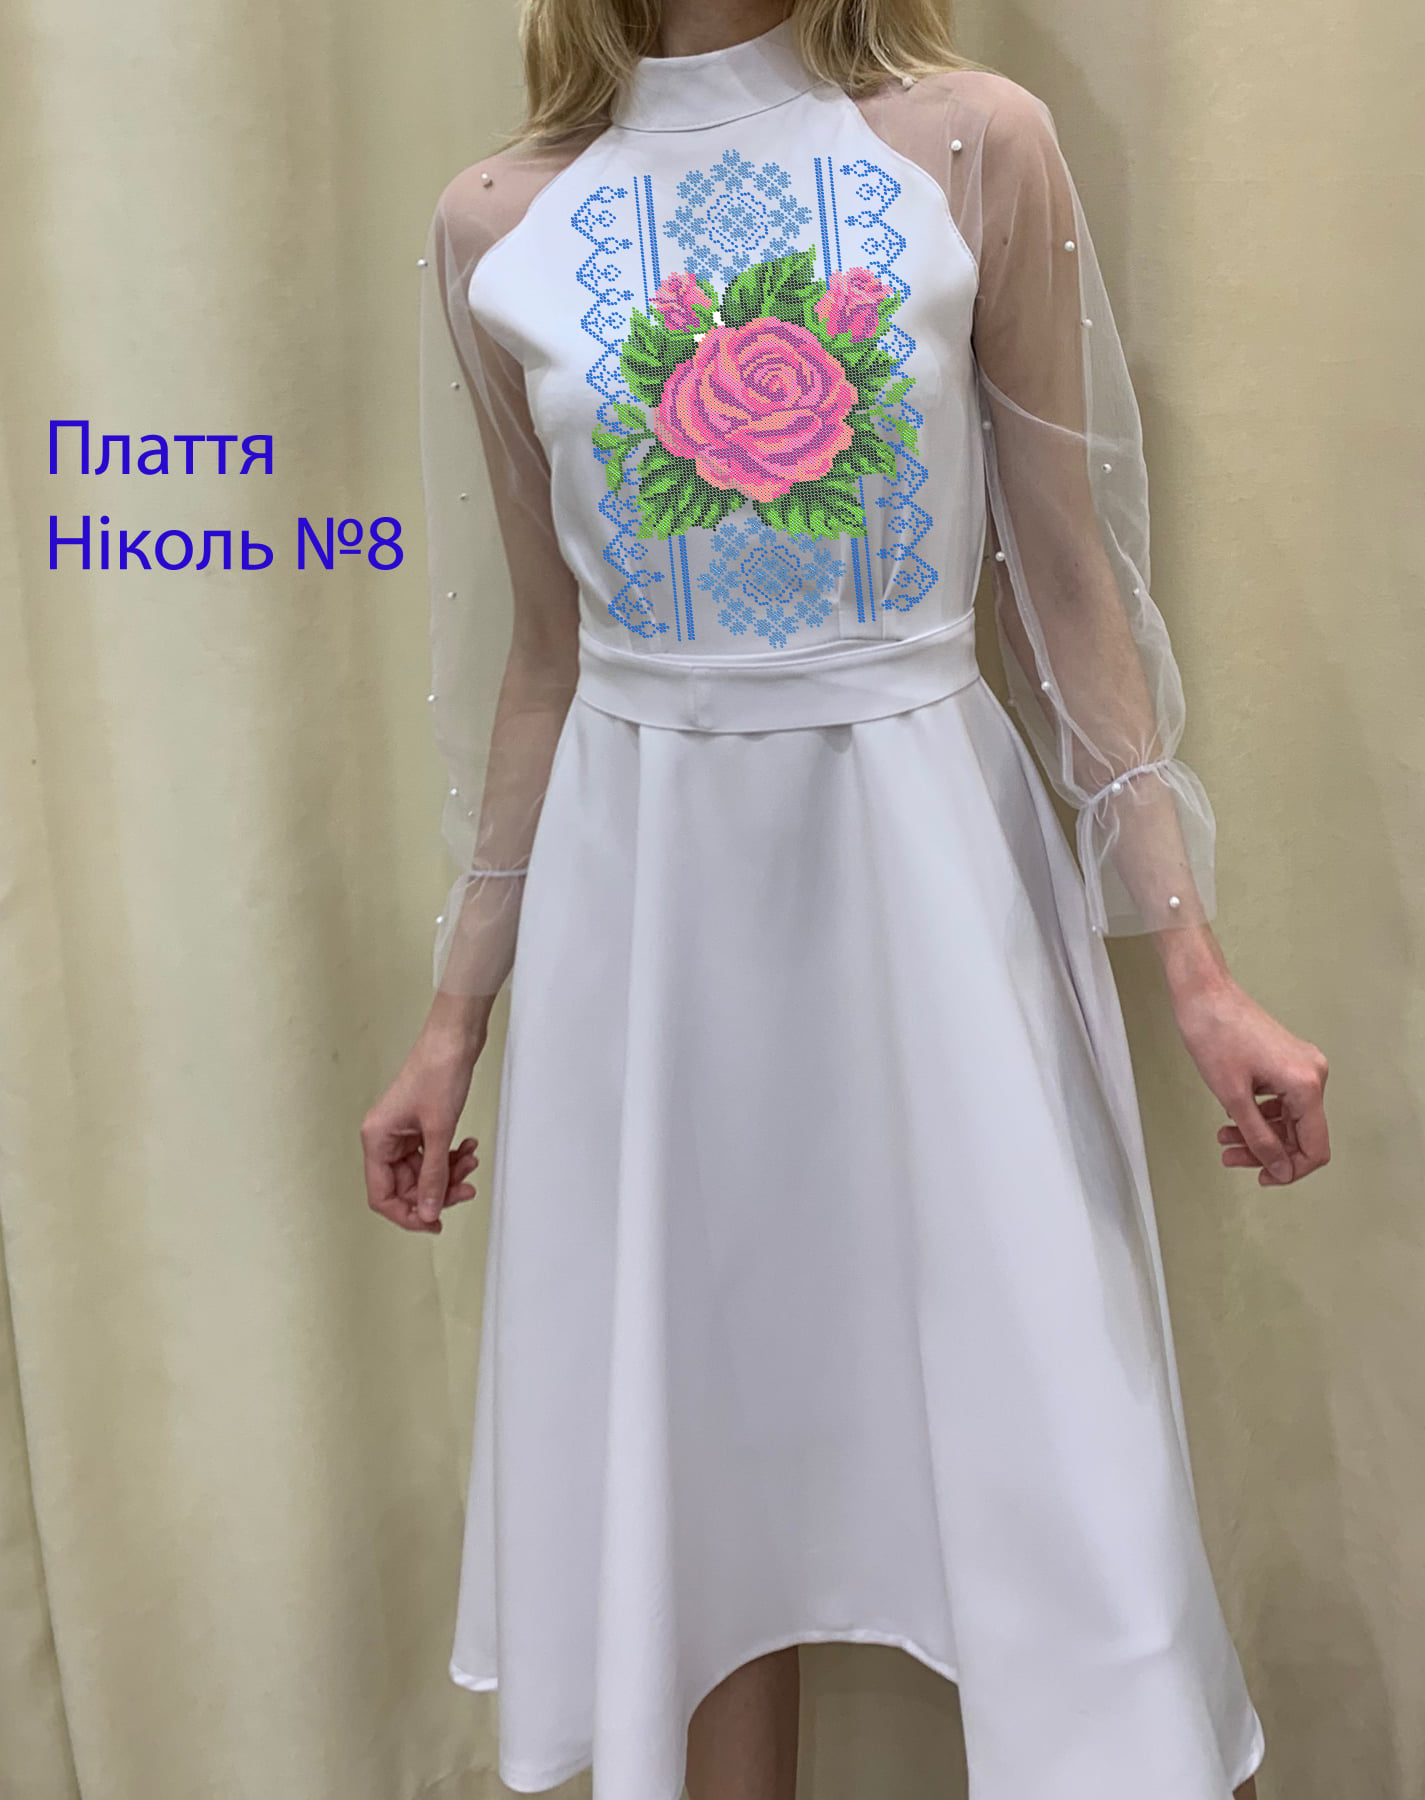 Пошита жіноча сукня для вишивки Ніколь №8